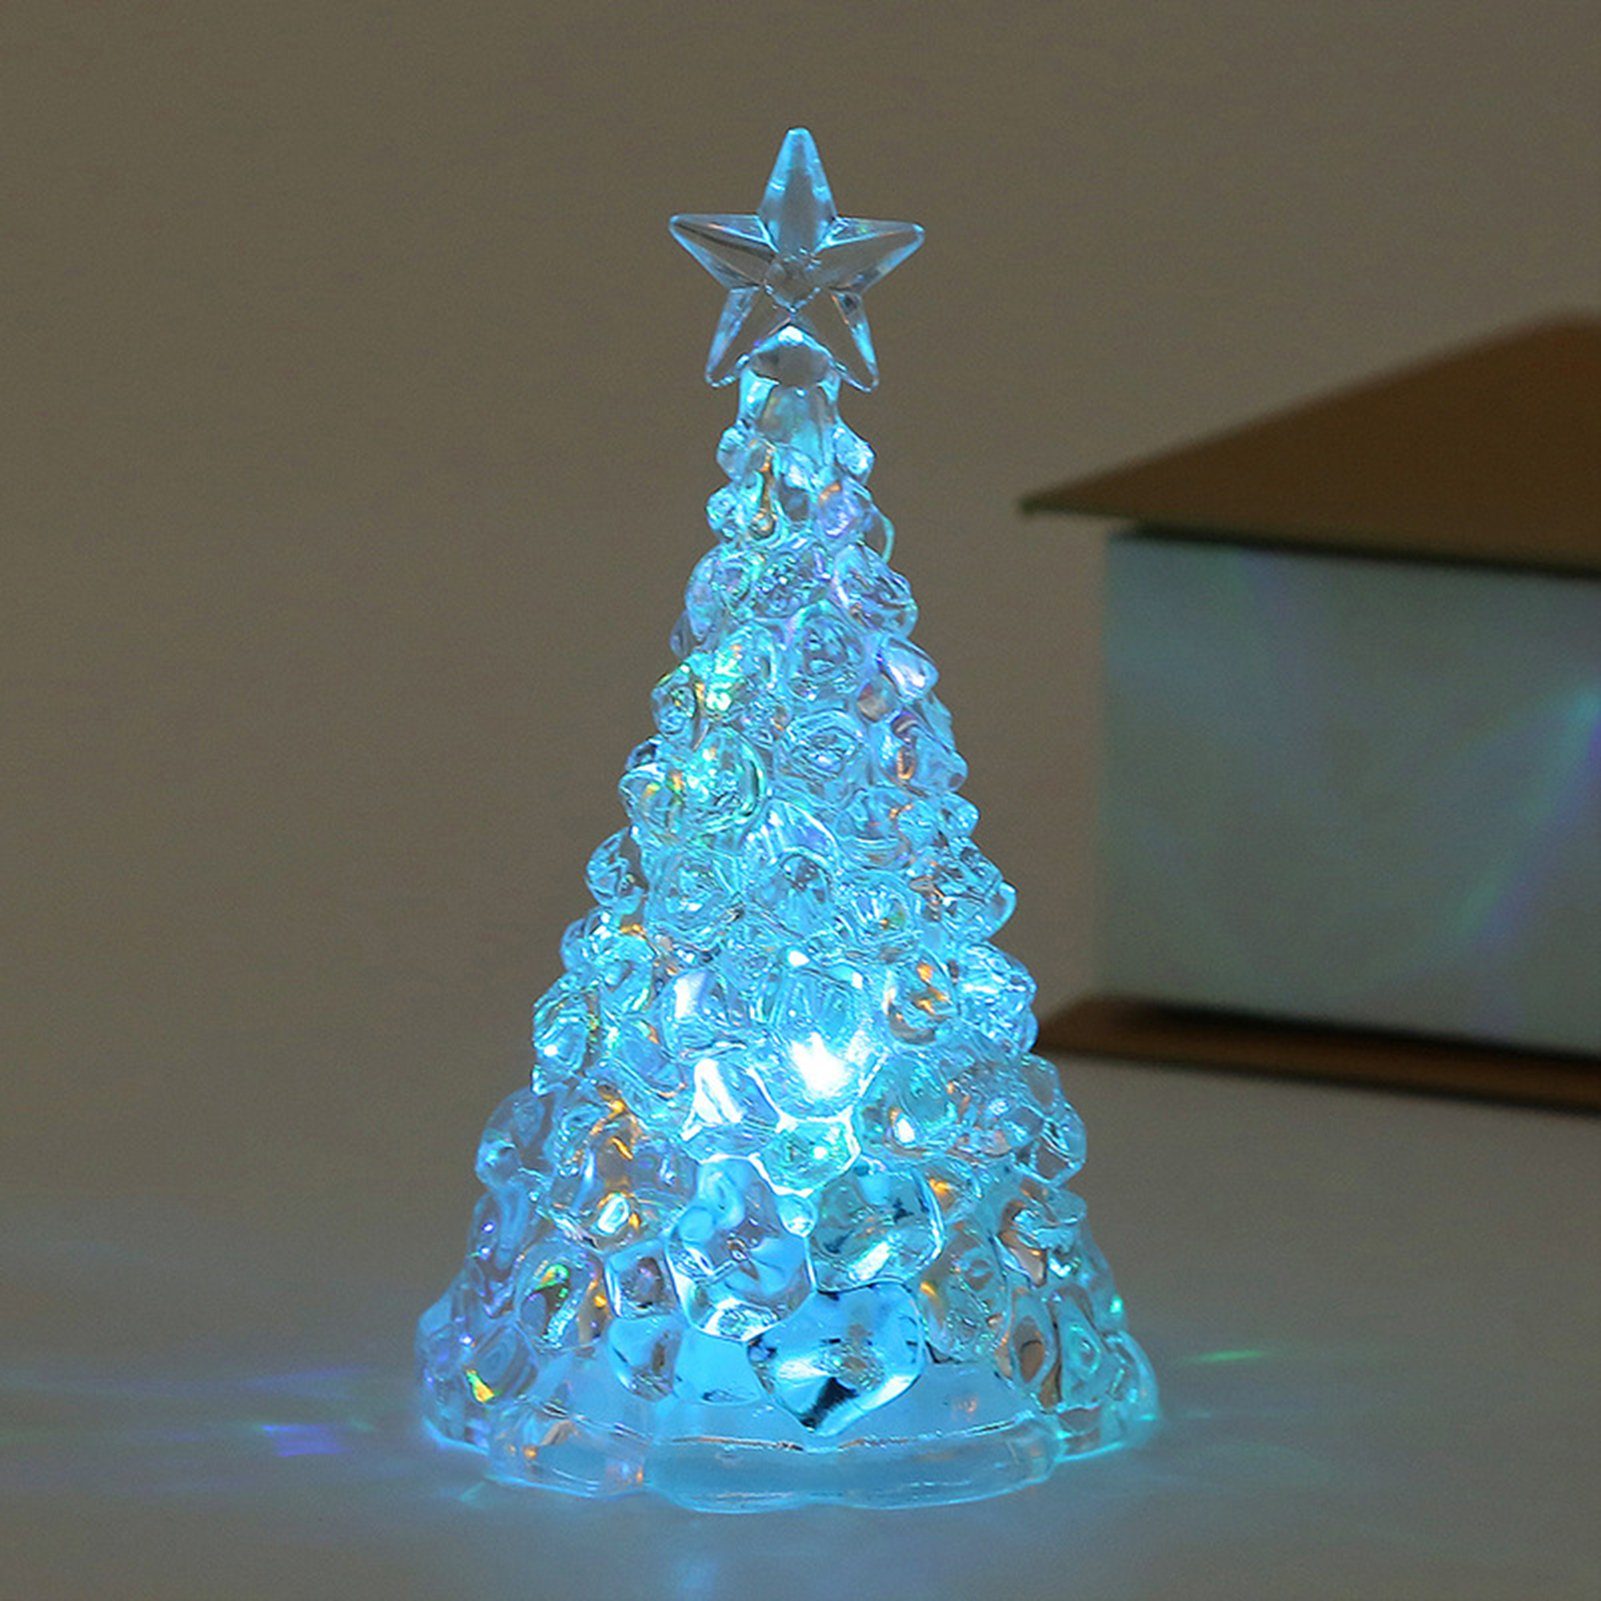 Rutaqian LED Nachtlicht 4 Stück Weihnachtsbaum Nachtlicht Heiligabend Geschenk LED Kerzenlicht, Weihnachtsdekorationen Desktop Ornament Kristall Nachtlicht Blau | Nachtlichter